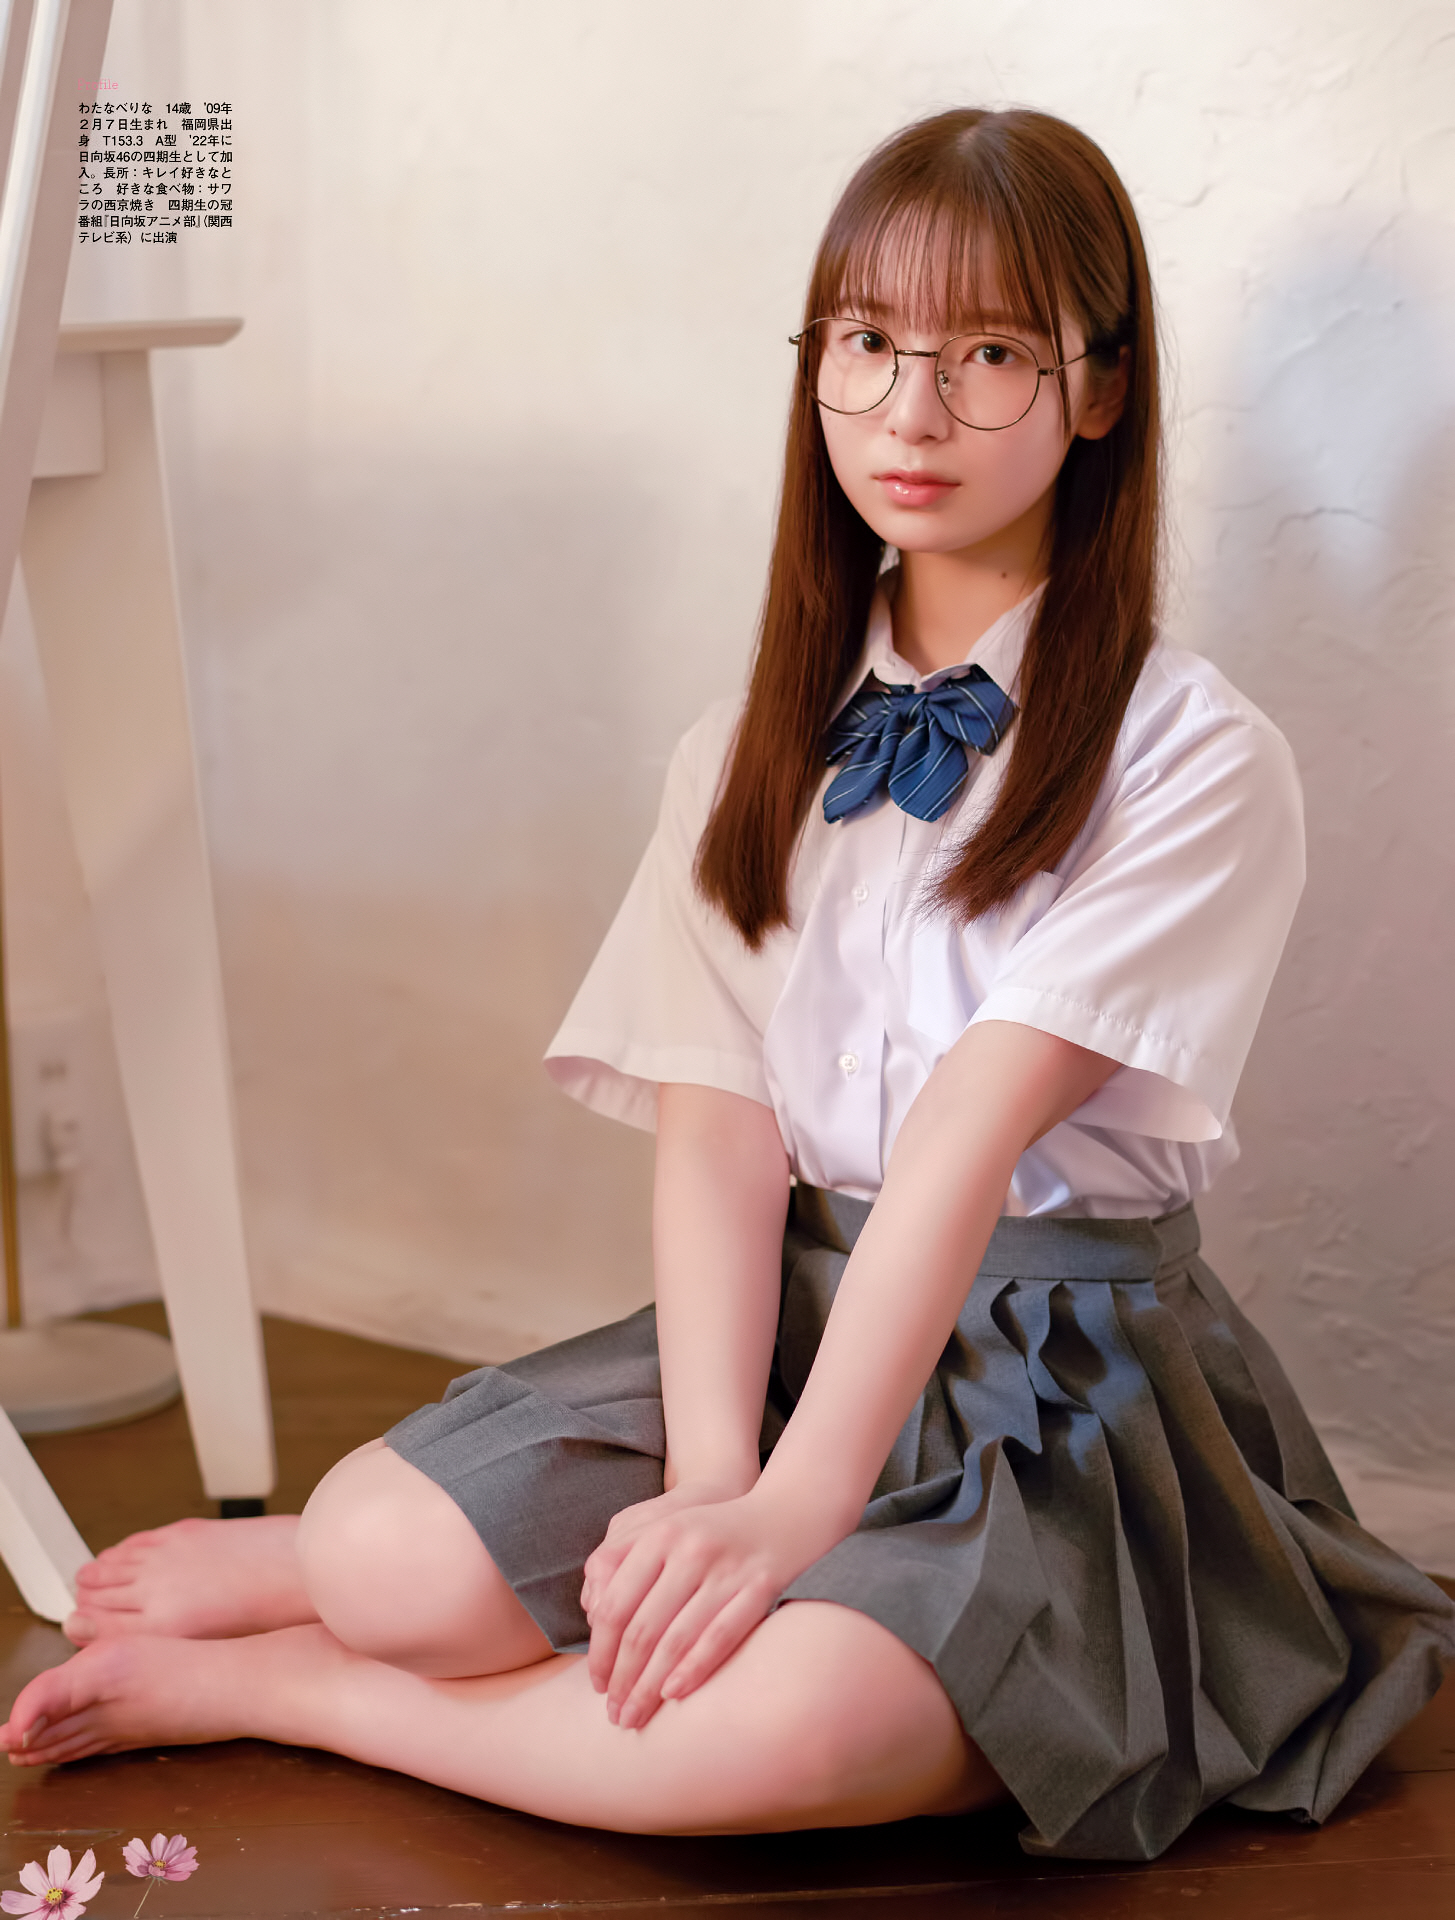 Takeuchi Kirari Watanabe Rina, 464th class in Hinata-zaka